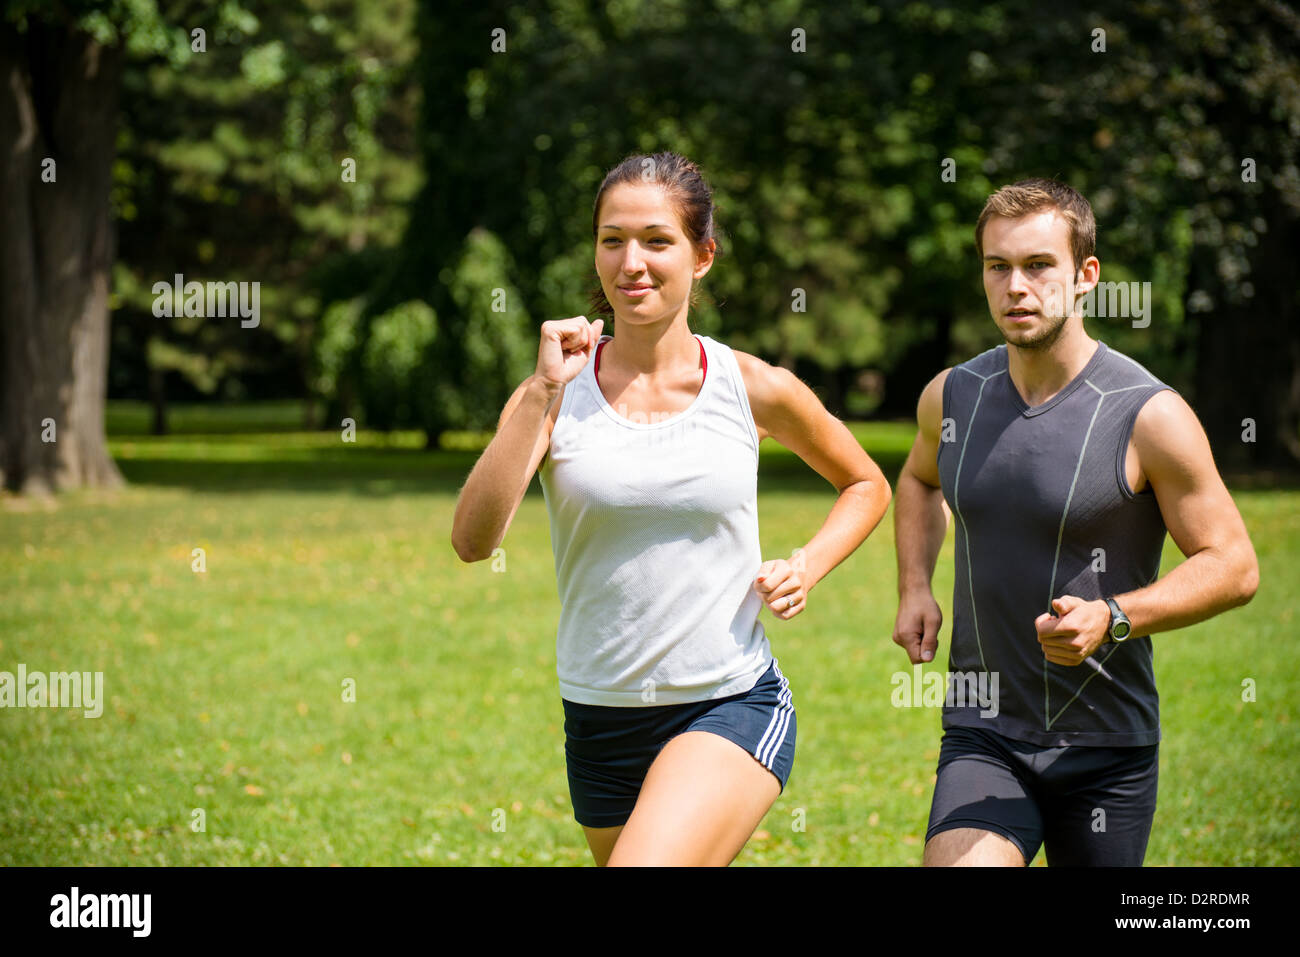 Paar jogging - junger Mann und Frau im Wettbewerb, Frau zuerst Stockfoto